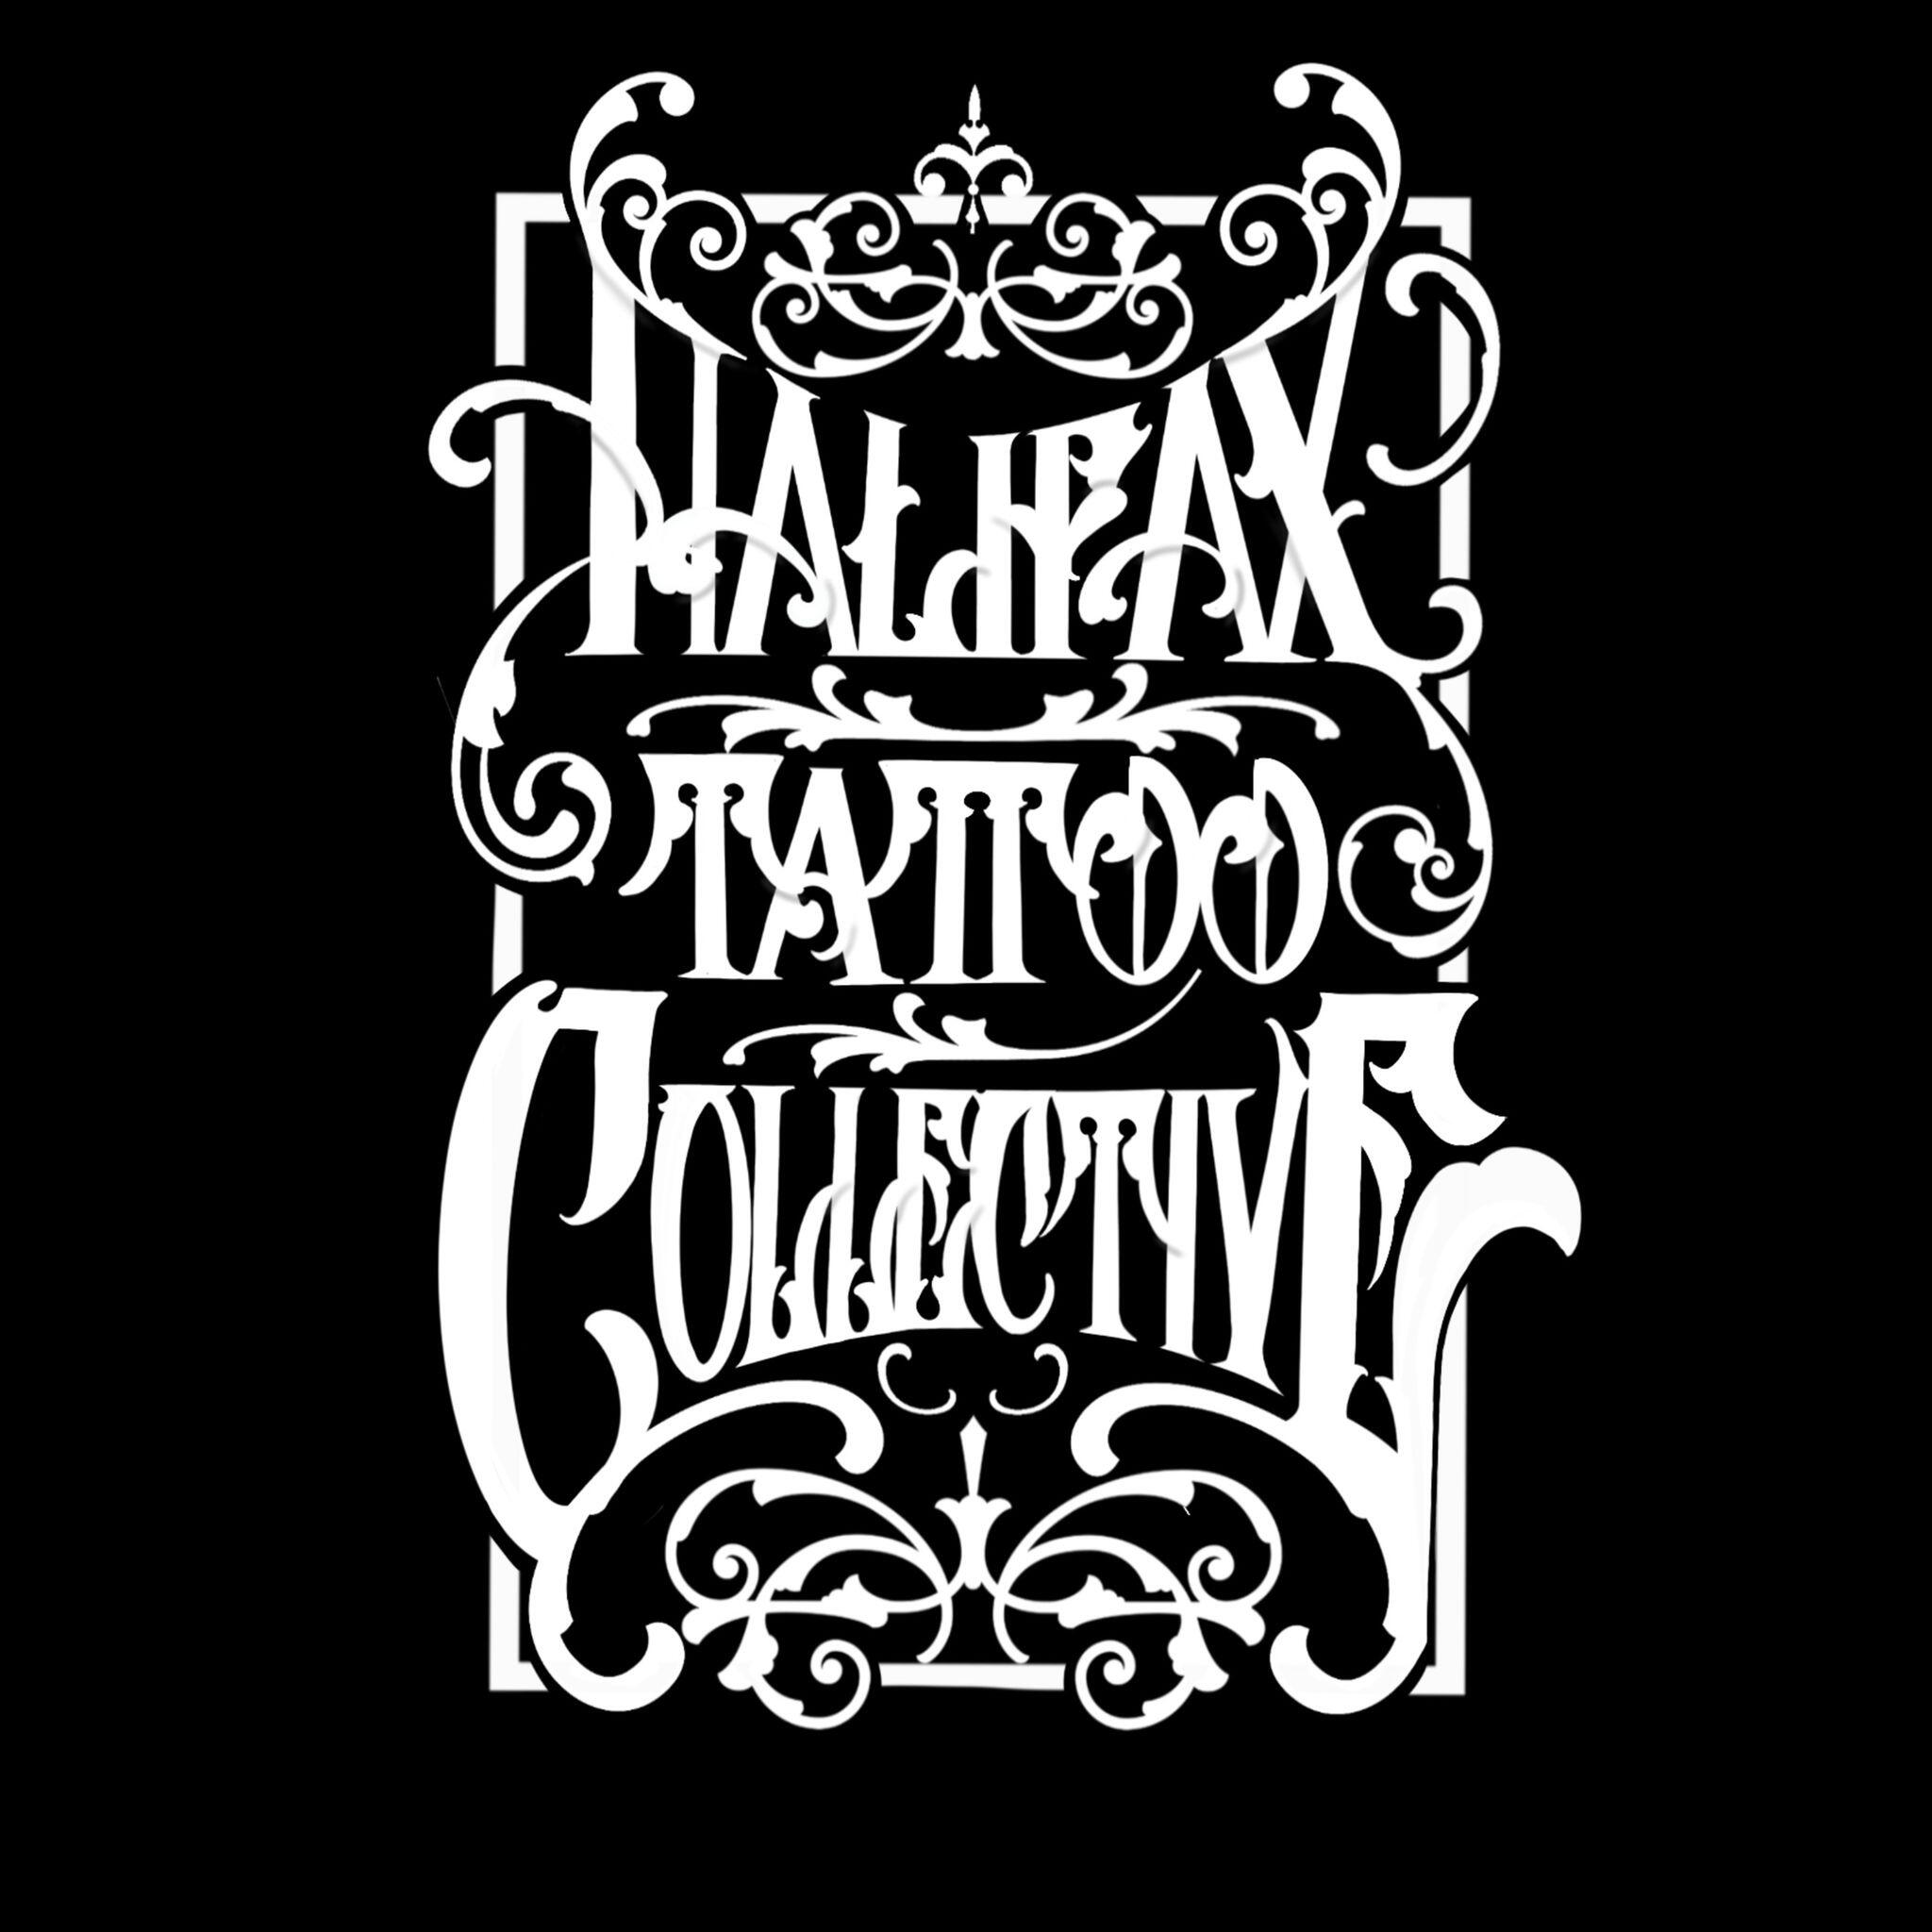 Halifax Tattoo Collective Halifax Nextdoor